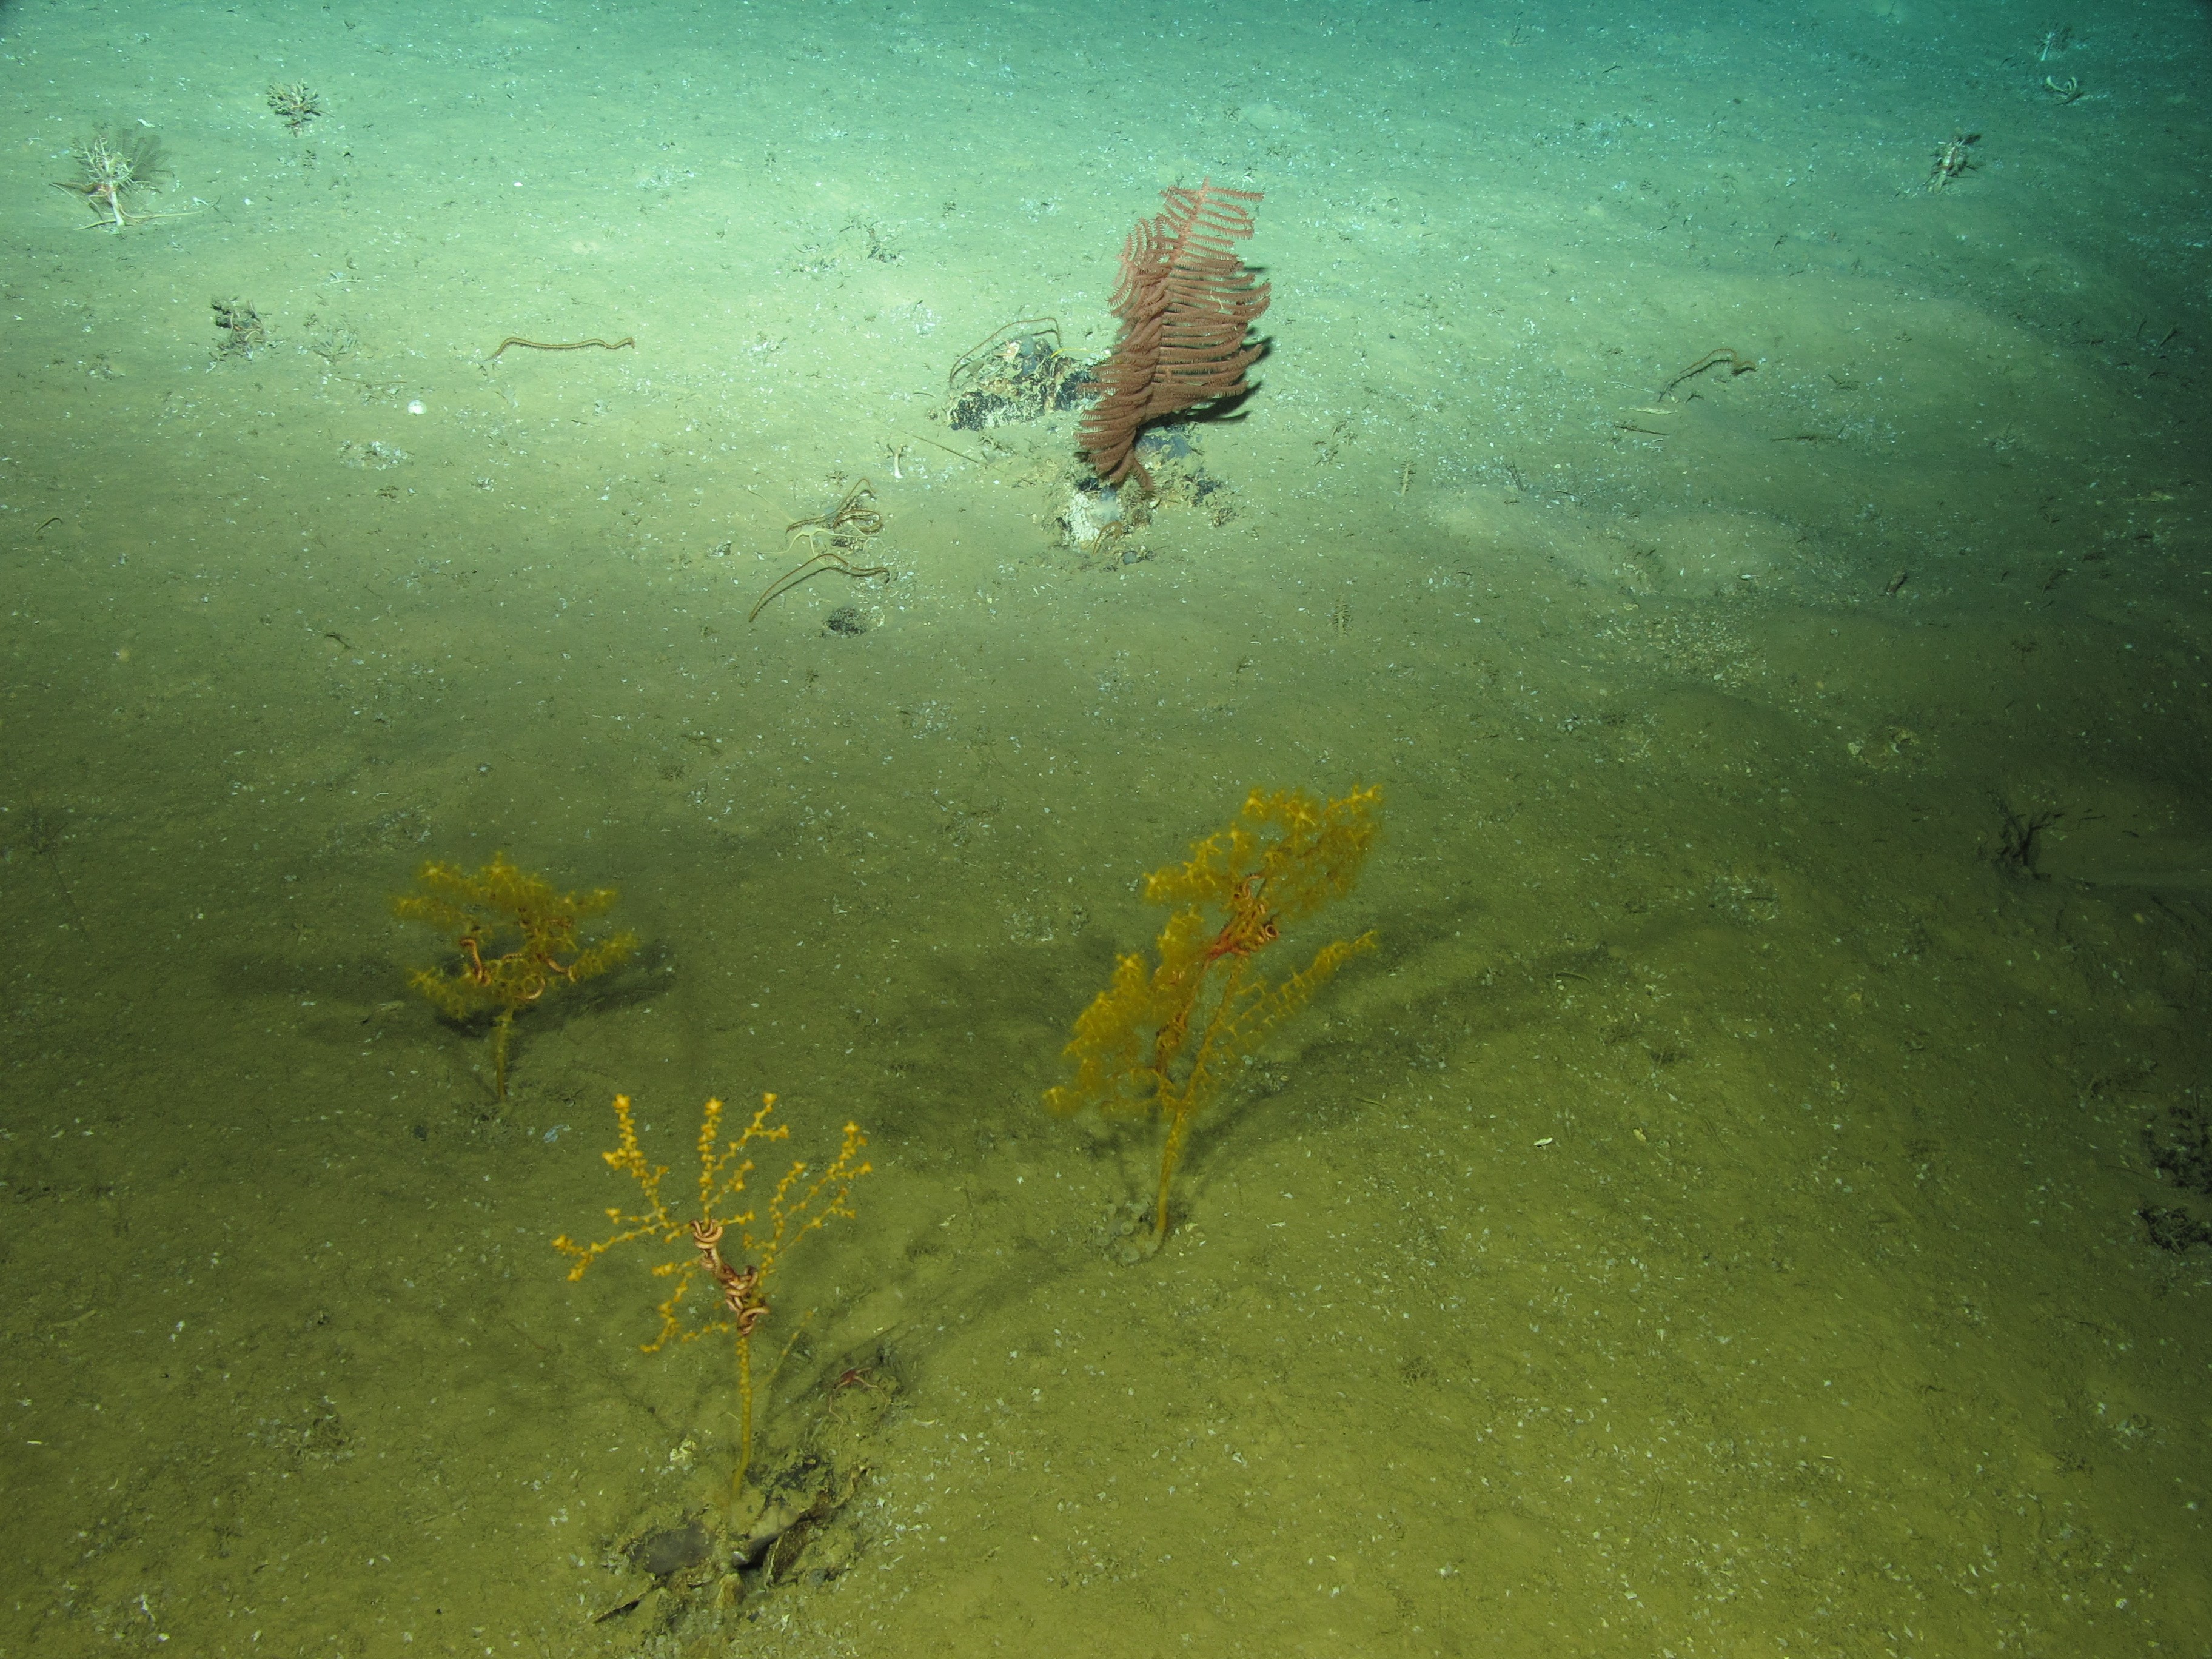 Gorgones et coraux noirs à 1960 m de profondeur dans le mont sous-marin Ormonde, documentés pendant l'expédition MEDWAVES (projet Atlas). Crédits : © MEDWAVES/IEO/ATLAS project